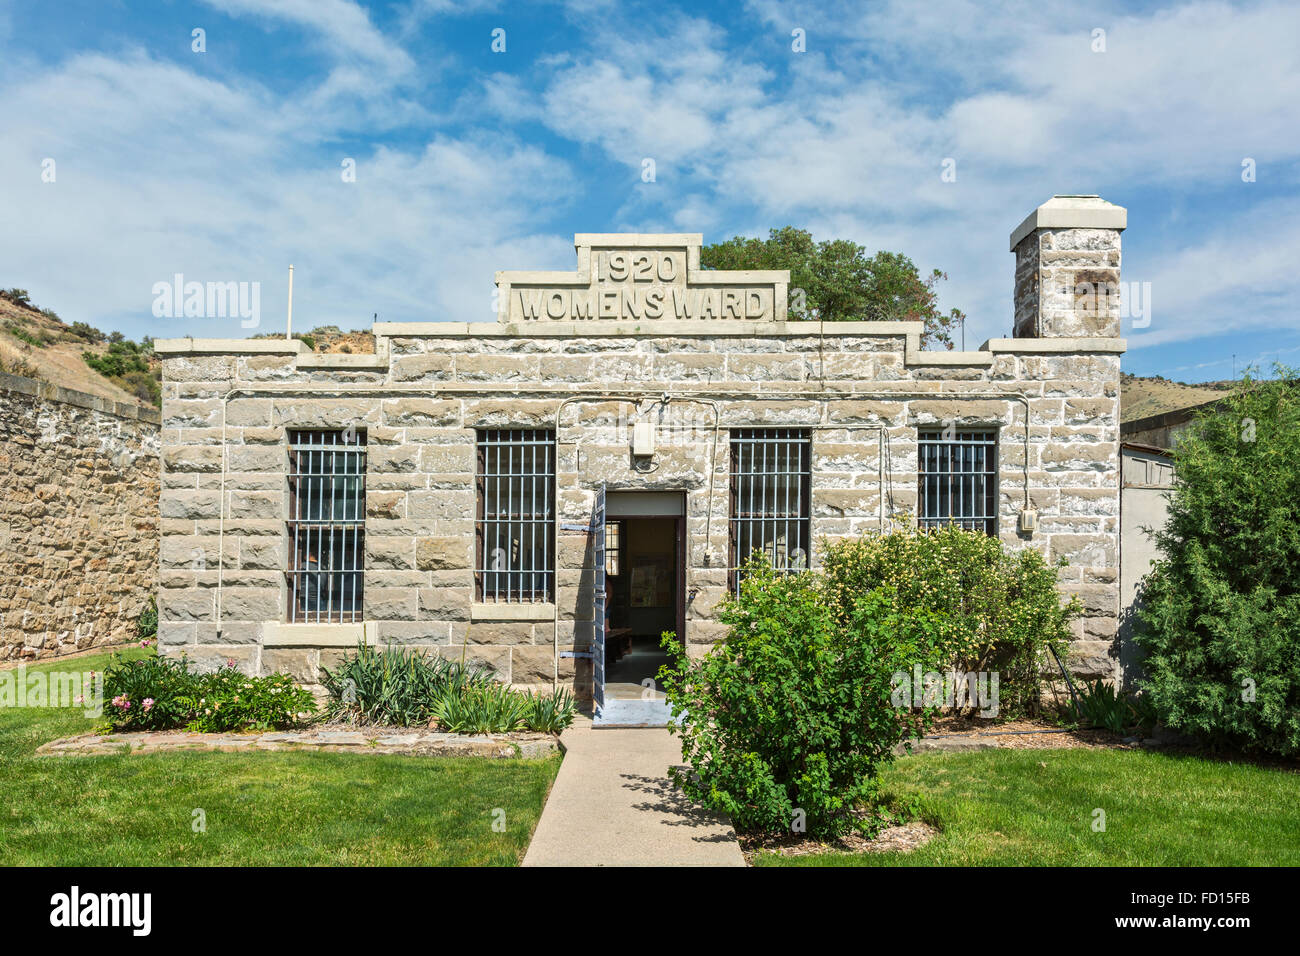 Idaho, Boise, Old Idaho Penitentiary, operated 1870-1973, Women's Ward built 1920 Stock Photo